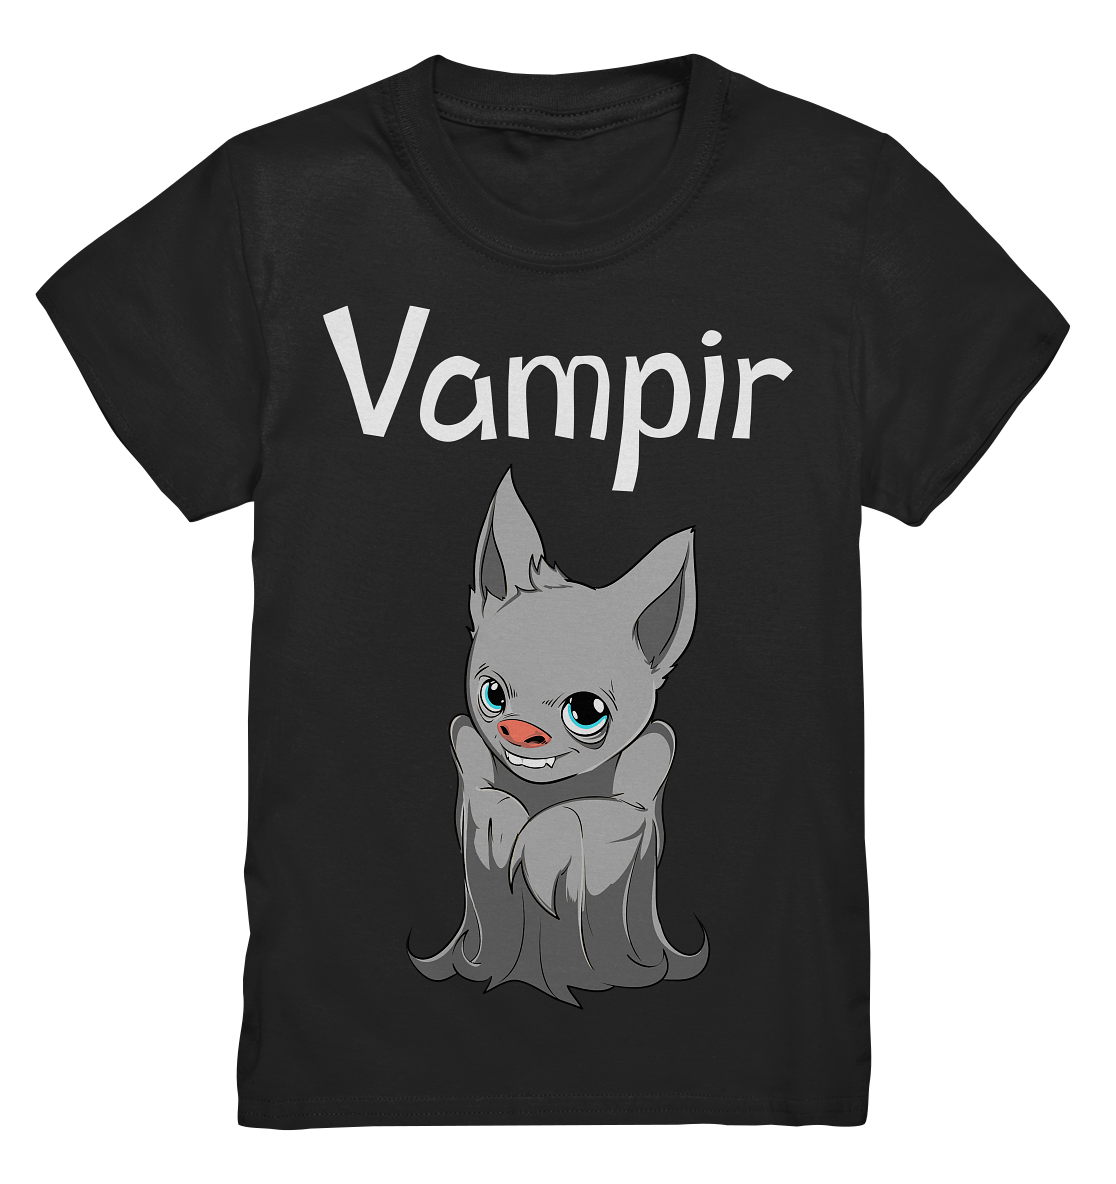 Vampir. Kleine Fledermaus - Kids Premium Shirt